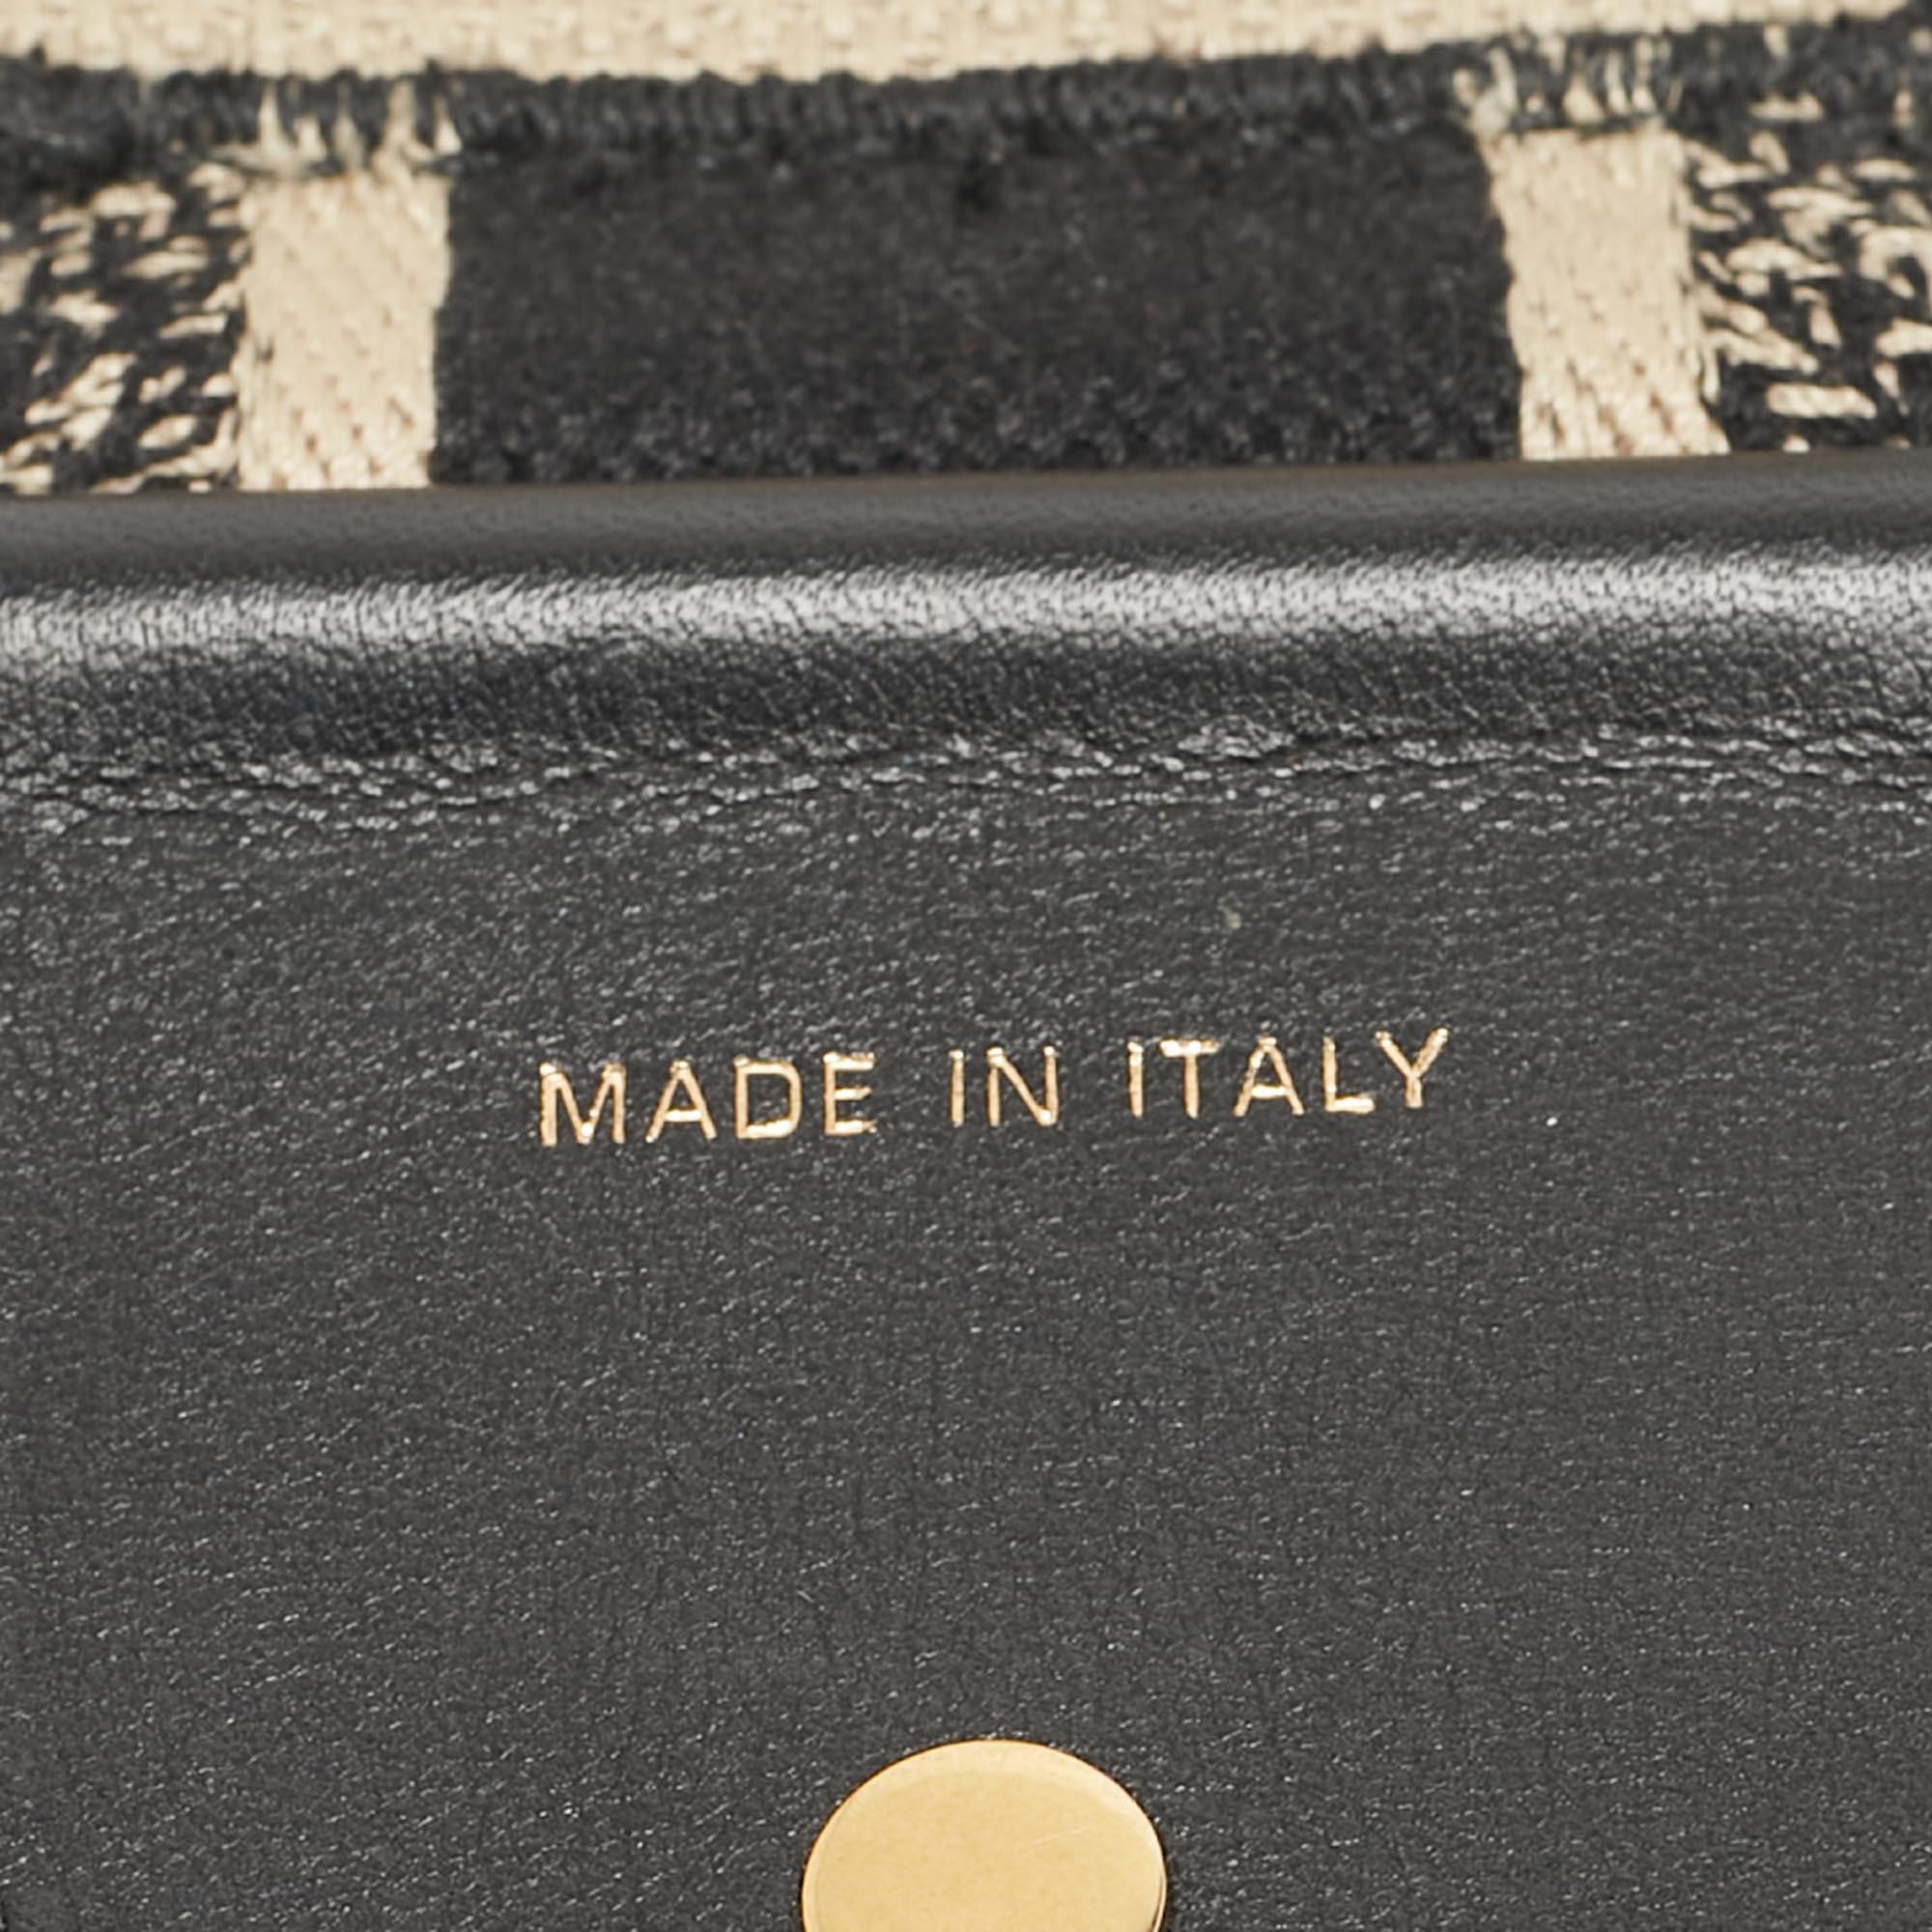 Présentant des éléments emblématiques de la Maison avec une esthétique signature, ce sac à bandoulière de Dior apportera une beauté iconique et de l'excellence à votre ensemble. Il a été conçu en toile et en cuir, et l'imprimé du nom de la marque